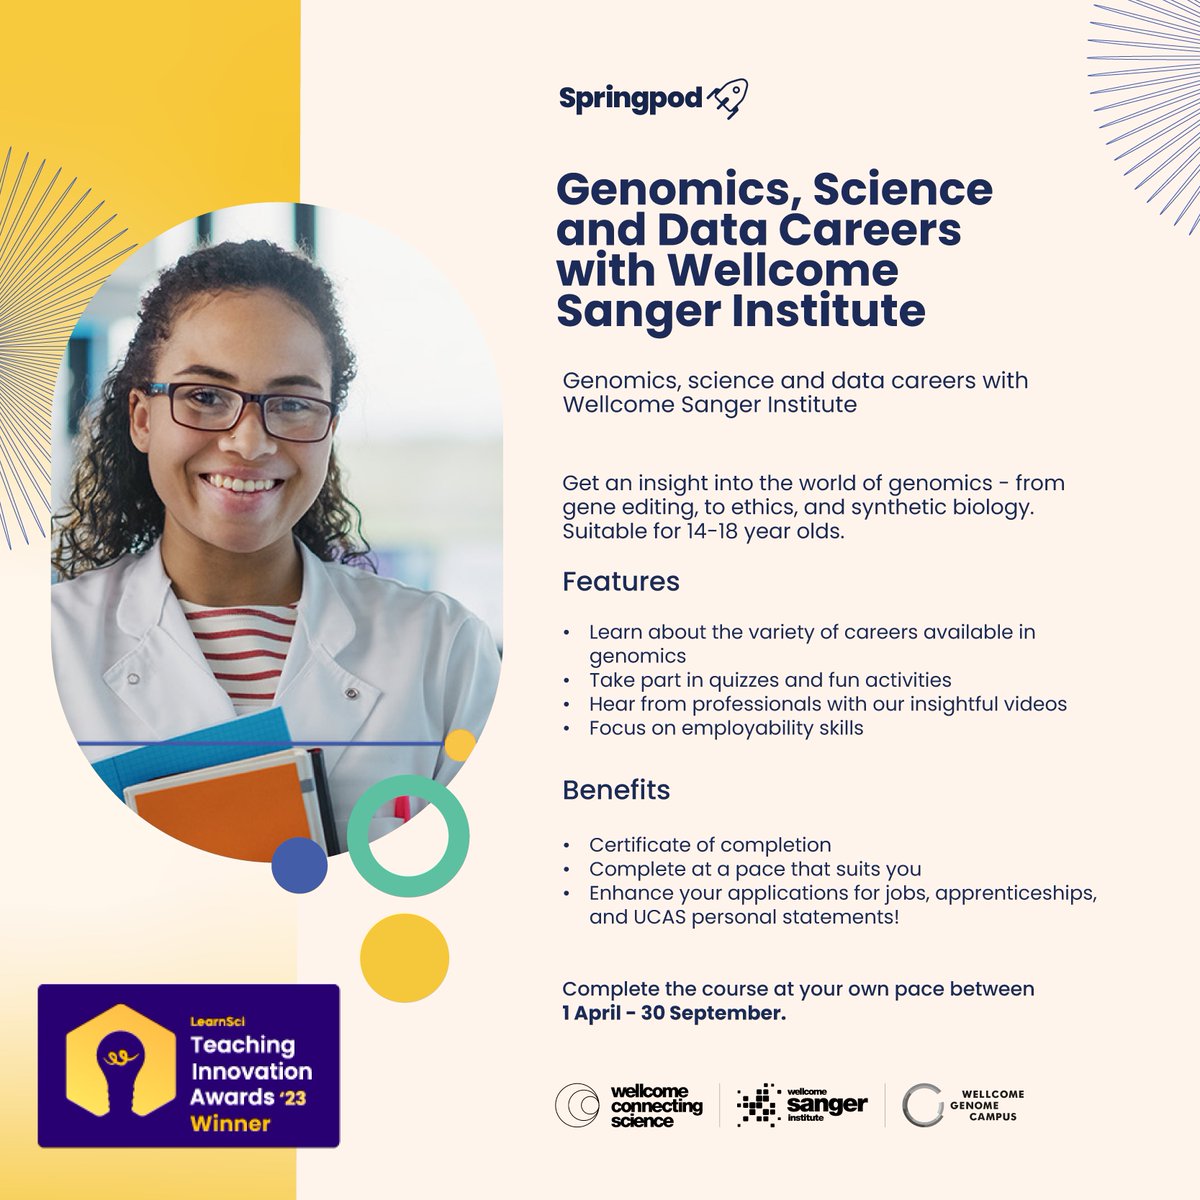 🌍𝗢𝘂𝗿 𝗮𝘄𝗮𝗿𝗱-𝘄𝗶𝗻𝗻𝗶𝗻𝗴, 𝗳𝗿𝗲𝗲 𝘃𝗶𝗿𝘁𝘂𝗮𝗹 #𝗪𝗼𝗿𝗸𝗘𝘅𝗽𝗲𝗿𝗶𝗲𝗻𝗰𝗲 𝗰𝗼𝘂𝗿𝘀𝗲 𝗶𝘀 𝗻𝗼𝘄 𝗼𝗽𝗲𝗻 𝘁𝗼 𝘆𝗼𝘂𝗻𝗴 𝗽𝗲𝗼𝗽𝗹𝗲 𝘄𝗼𝗿𝗹𝗱𝘄𝗶𝗱𝗲! They can explore careers in #genomics, #science & #data with @sangerinstitute! 🔗cstu.io/bda2a8